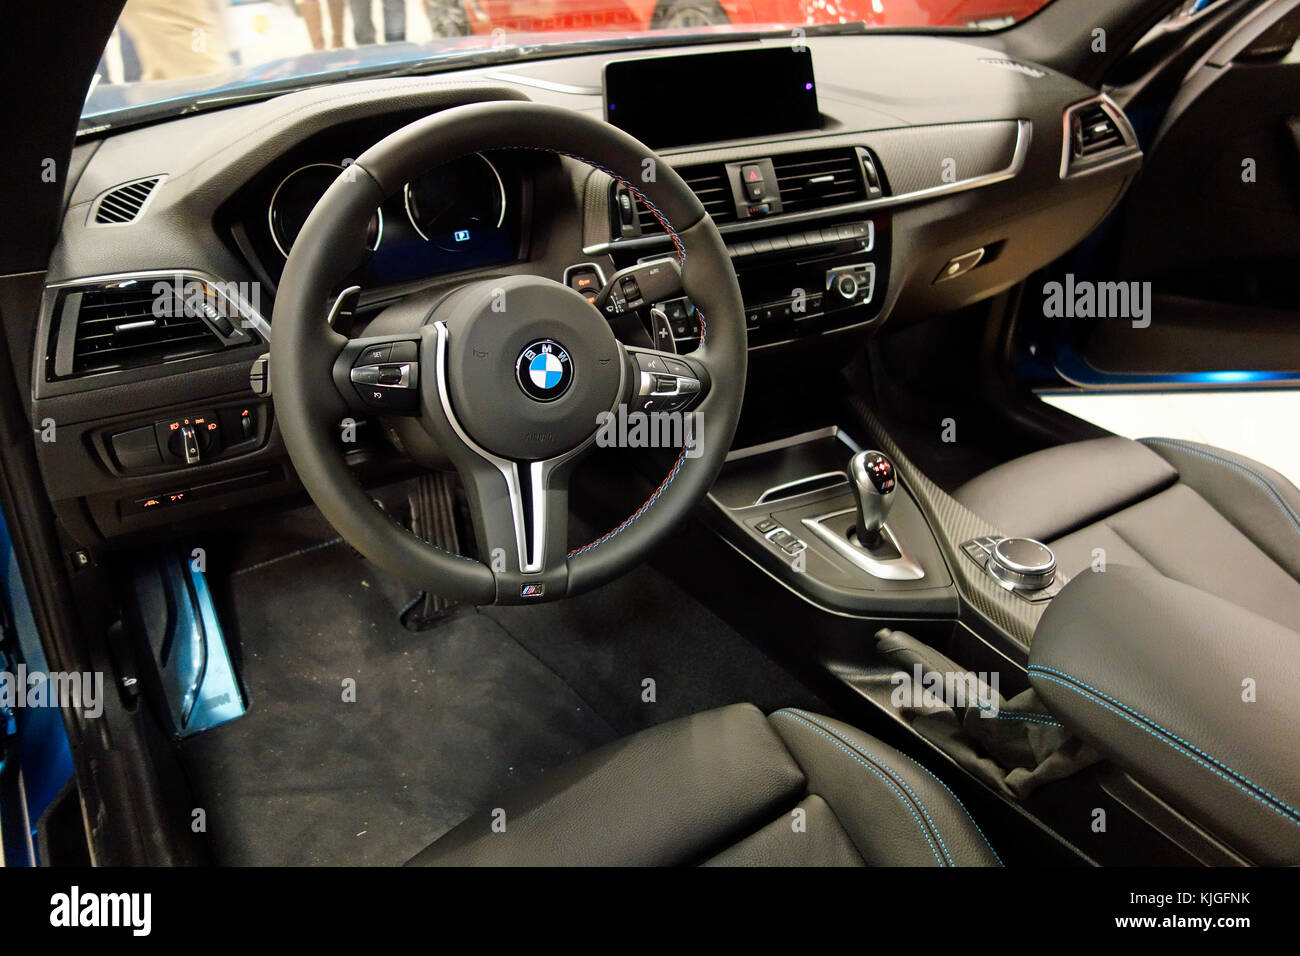 Lenkrad, Armaturenbrett und Innenraum eines 2018 BMW M2 Automobils  Stockfotografie - Alamy